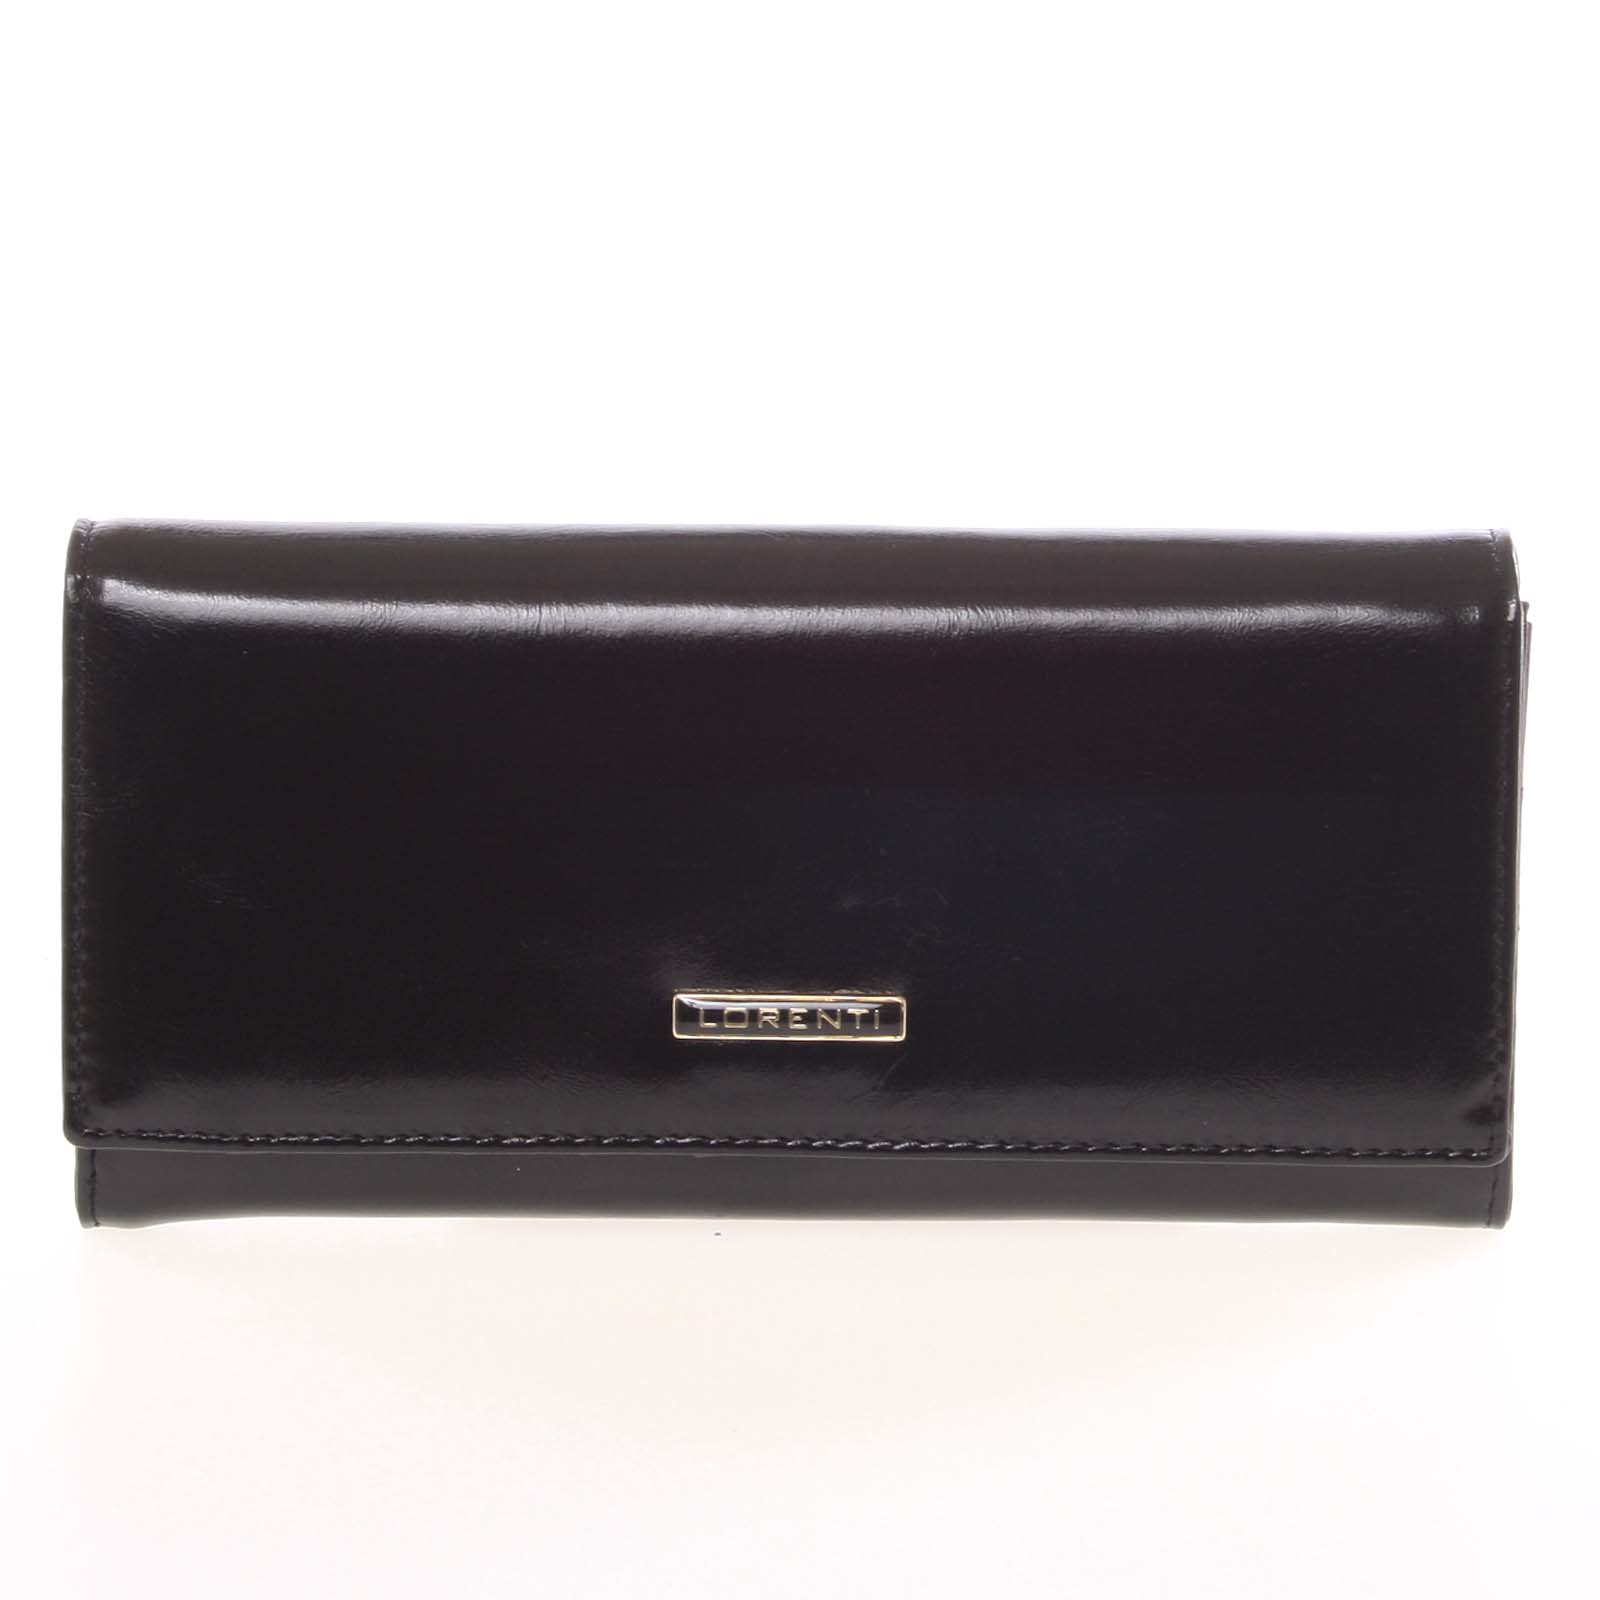 Dámská elegantní kožená peněženka černá - Lorenti 2037